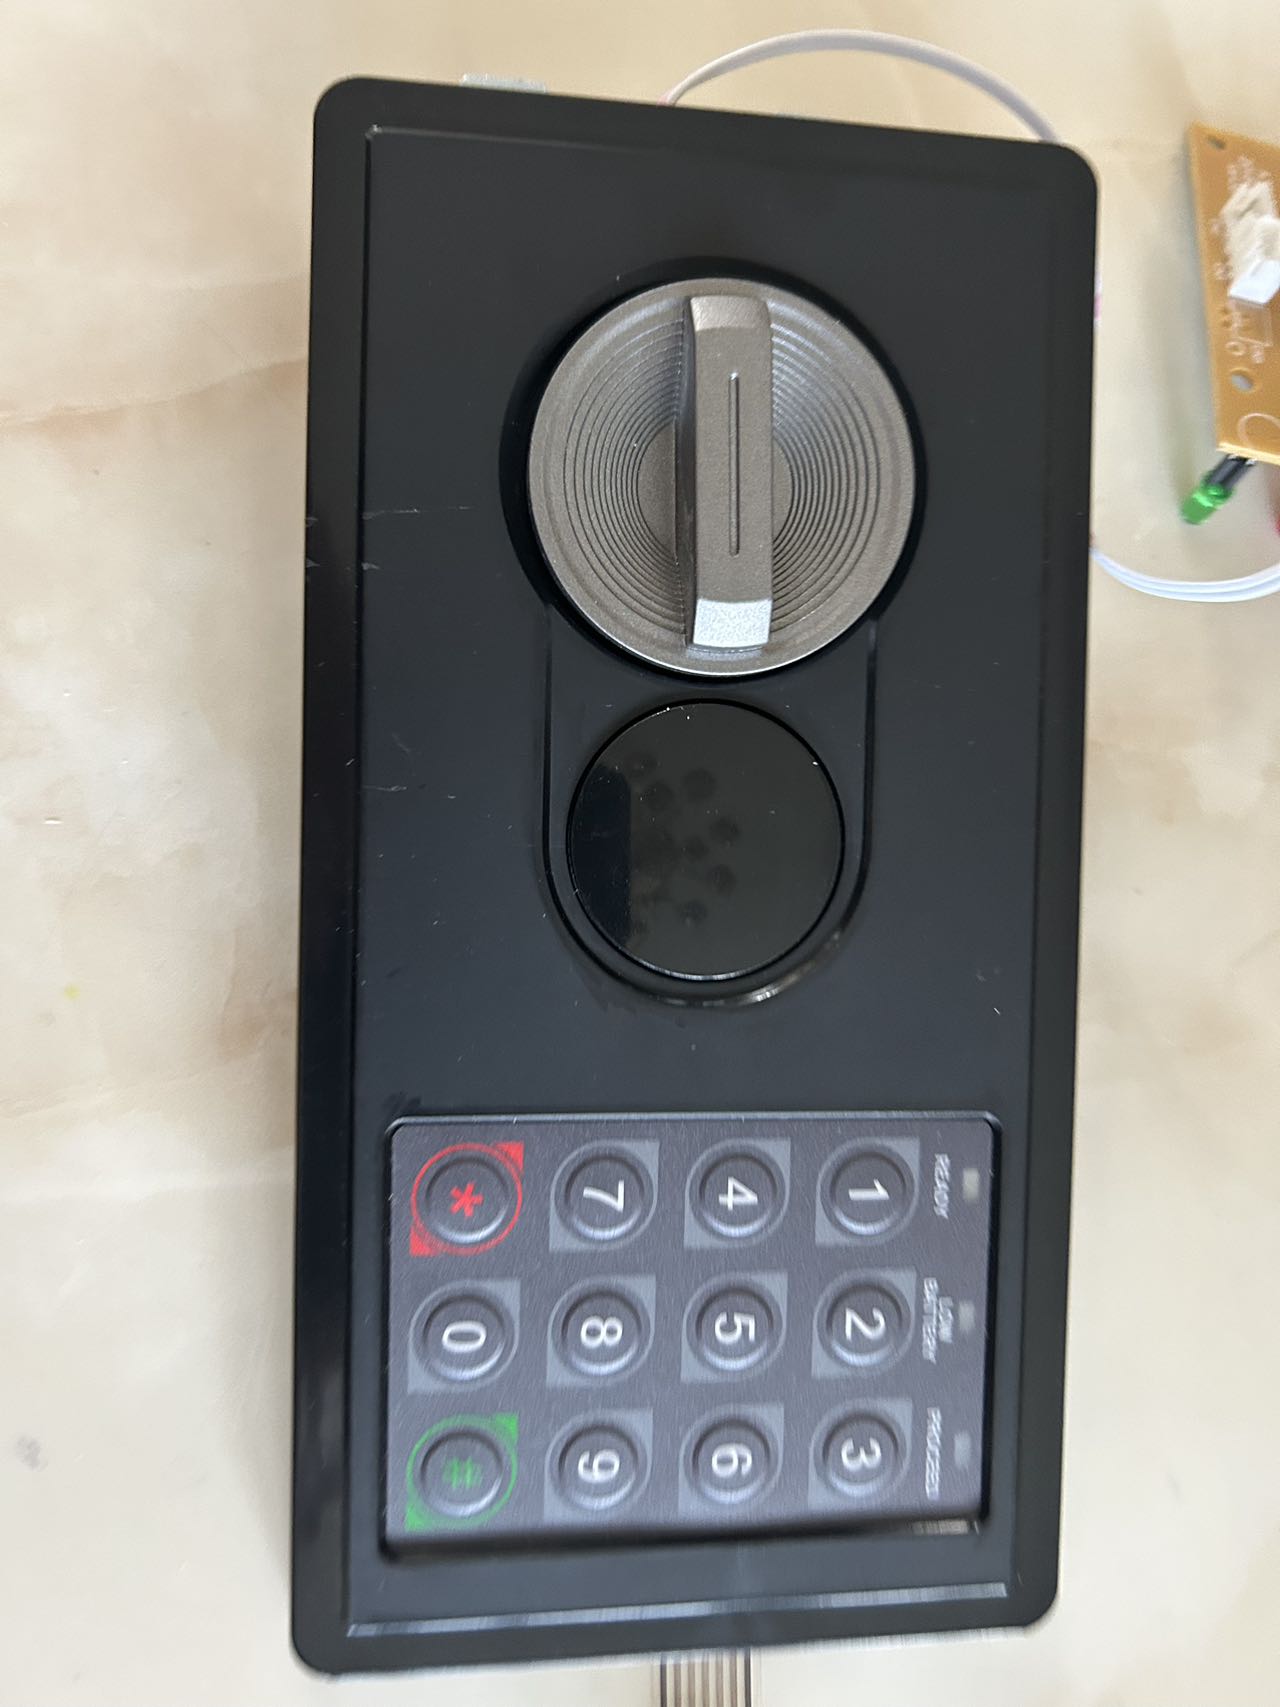 Cerradura electrónica con teclado de contraseña digital barata de China para fabricante de cajas fuertes para el hogar del hotel